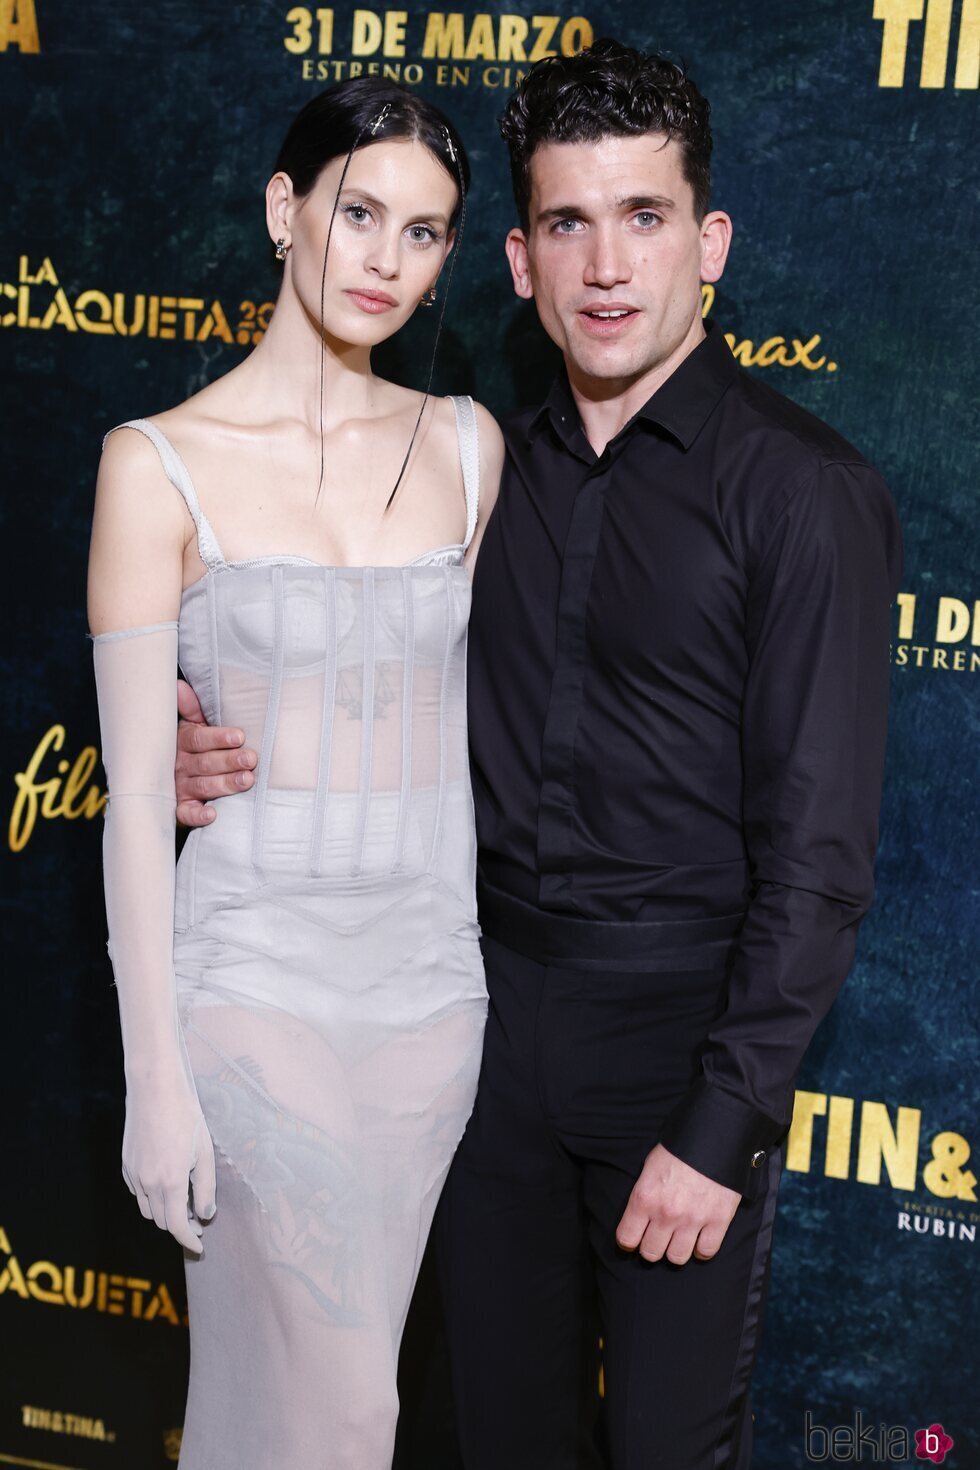 Milena Smit y Jaime Lorente en la premiere de 'Tin&Tina'